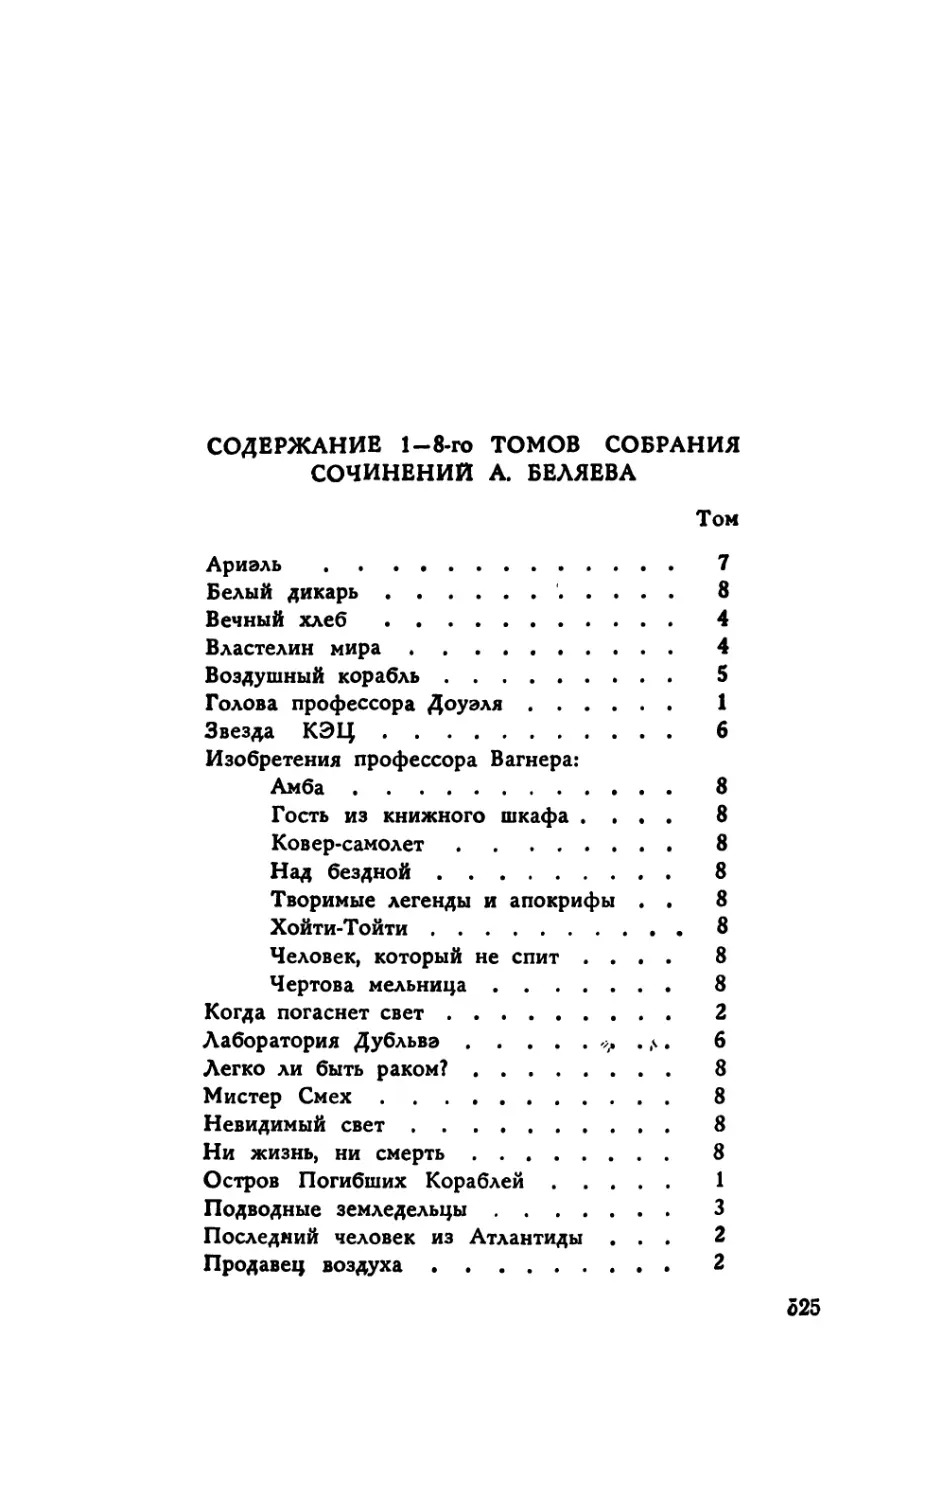 Содержание 1—8-го томов собрания сочинений А. Беляева